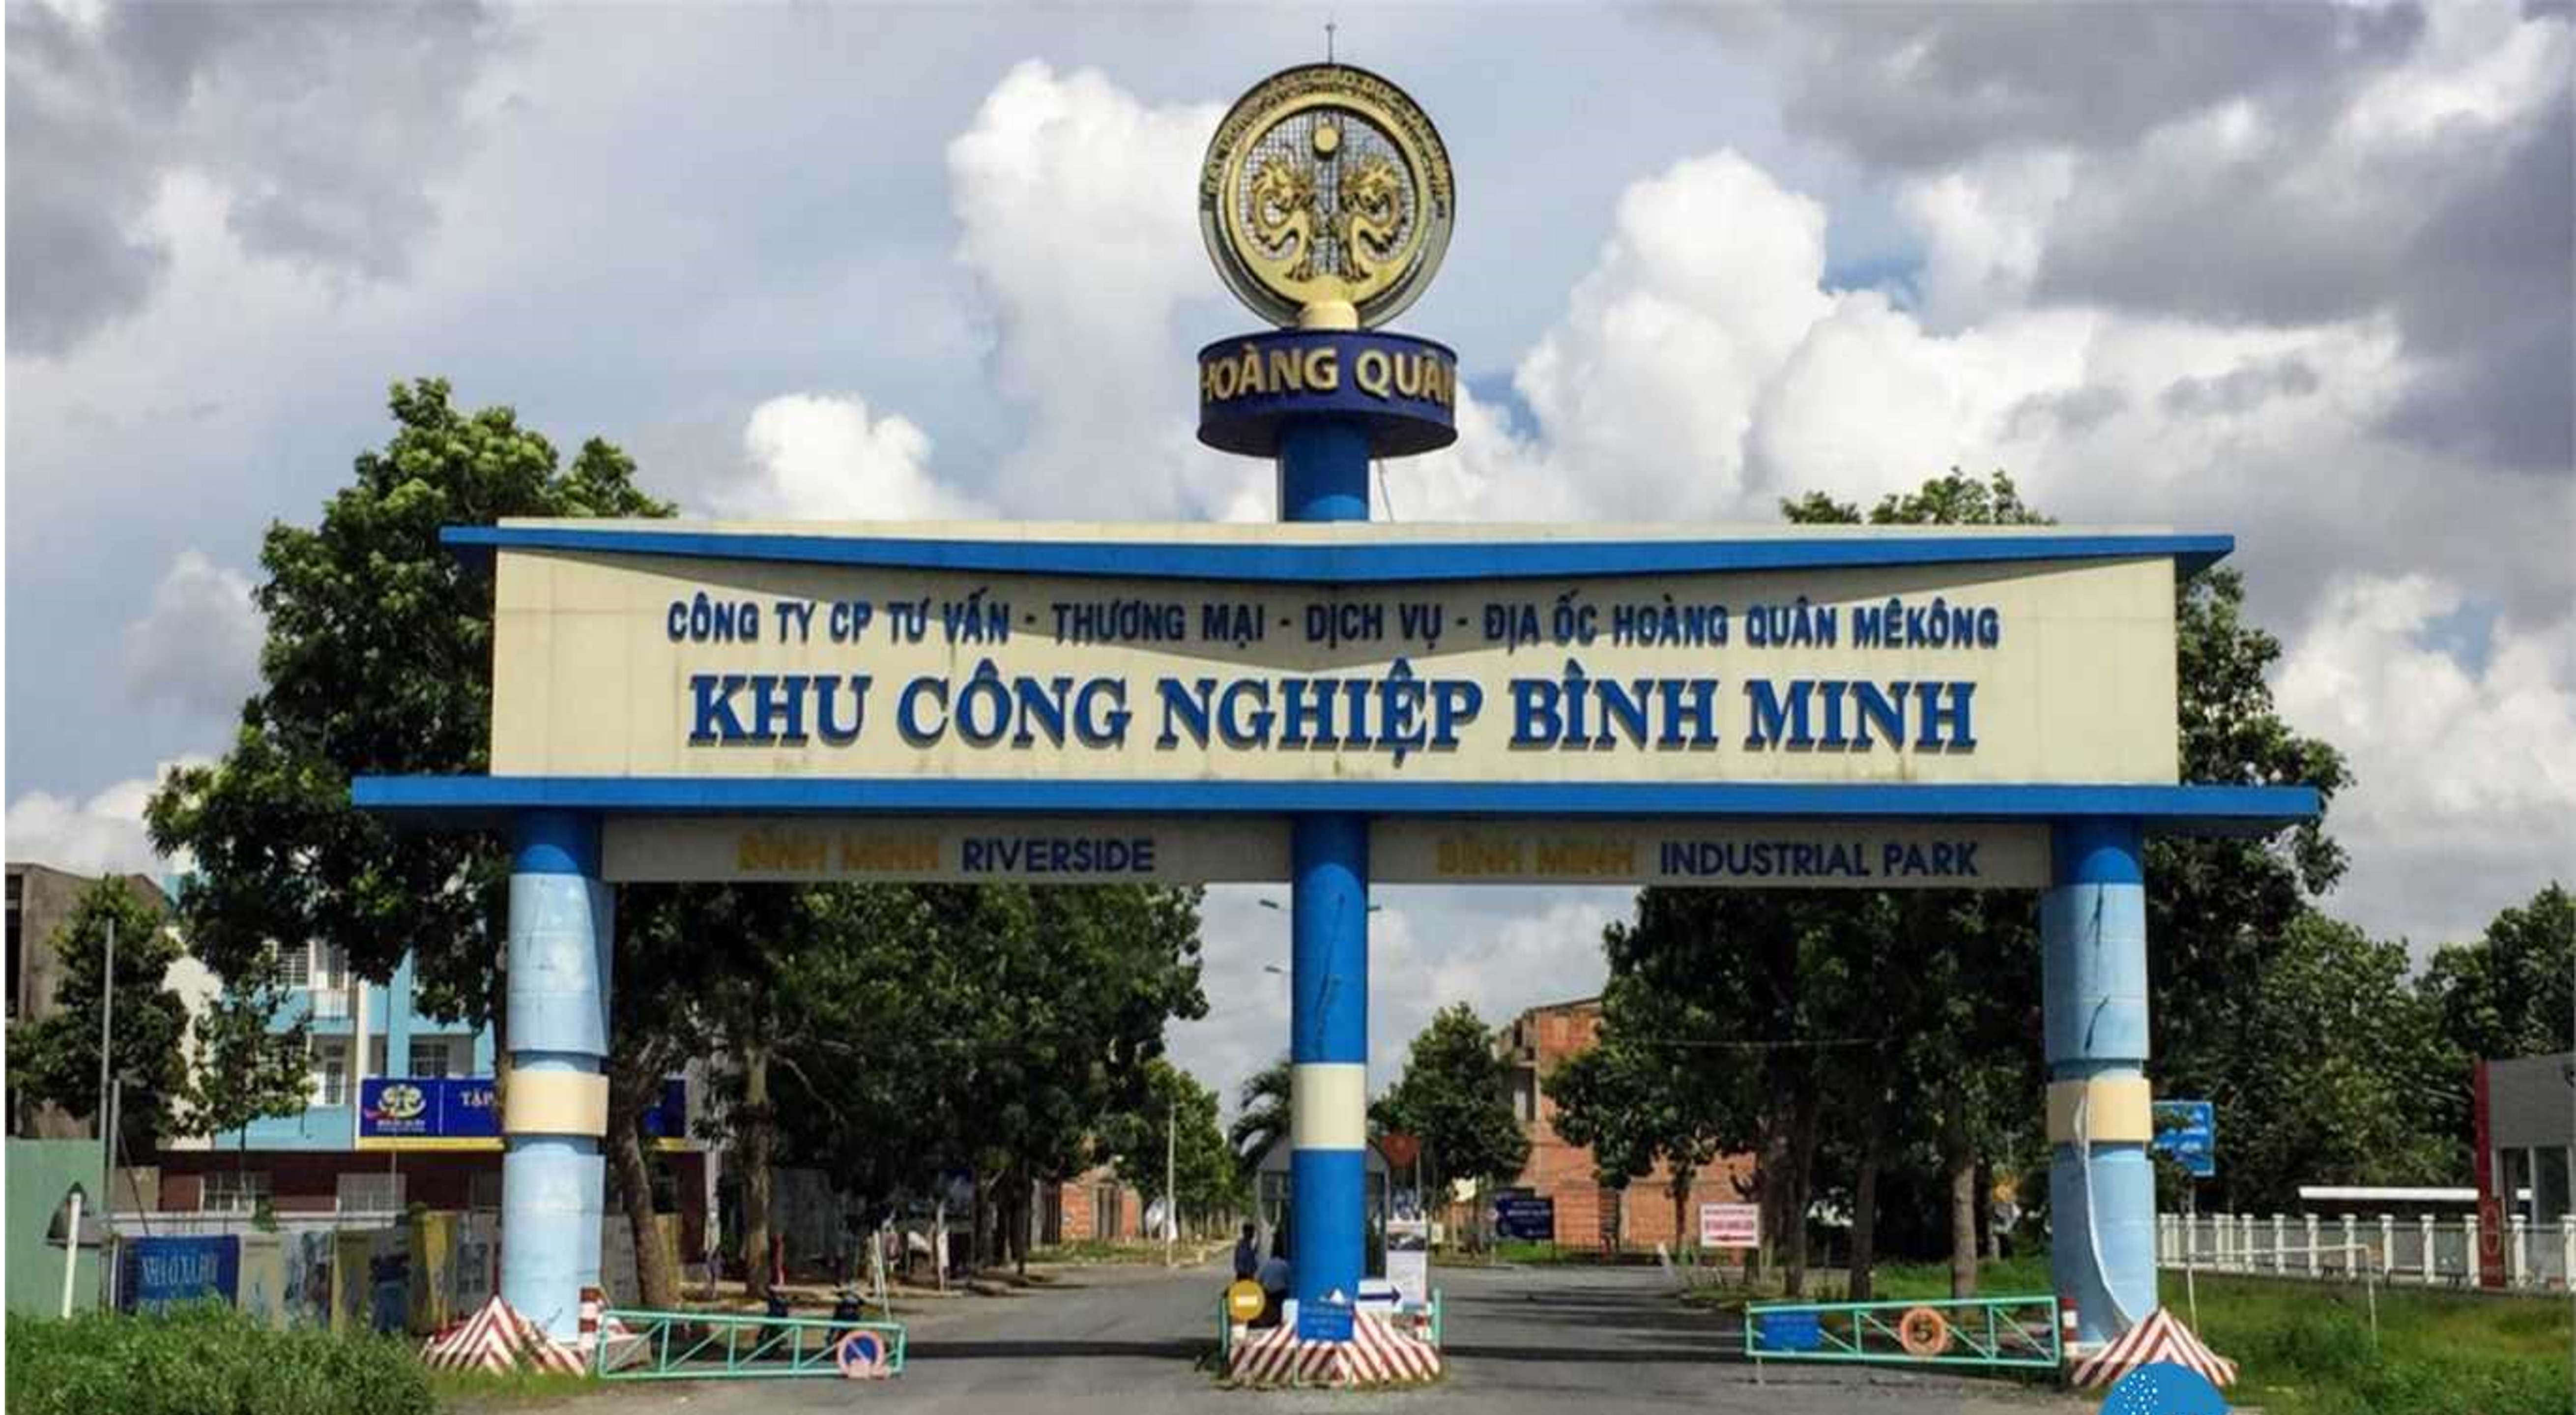 KCN Bình Minh